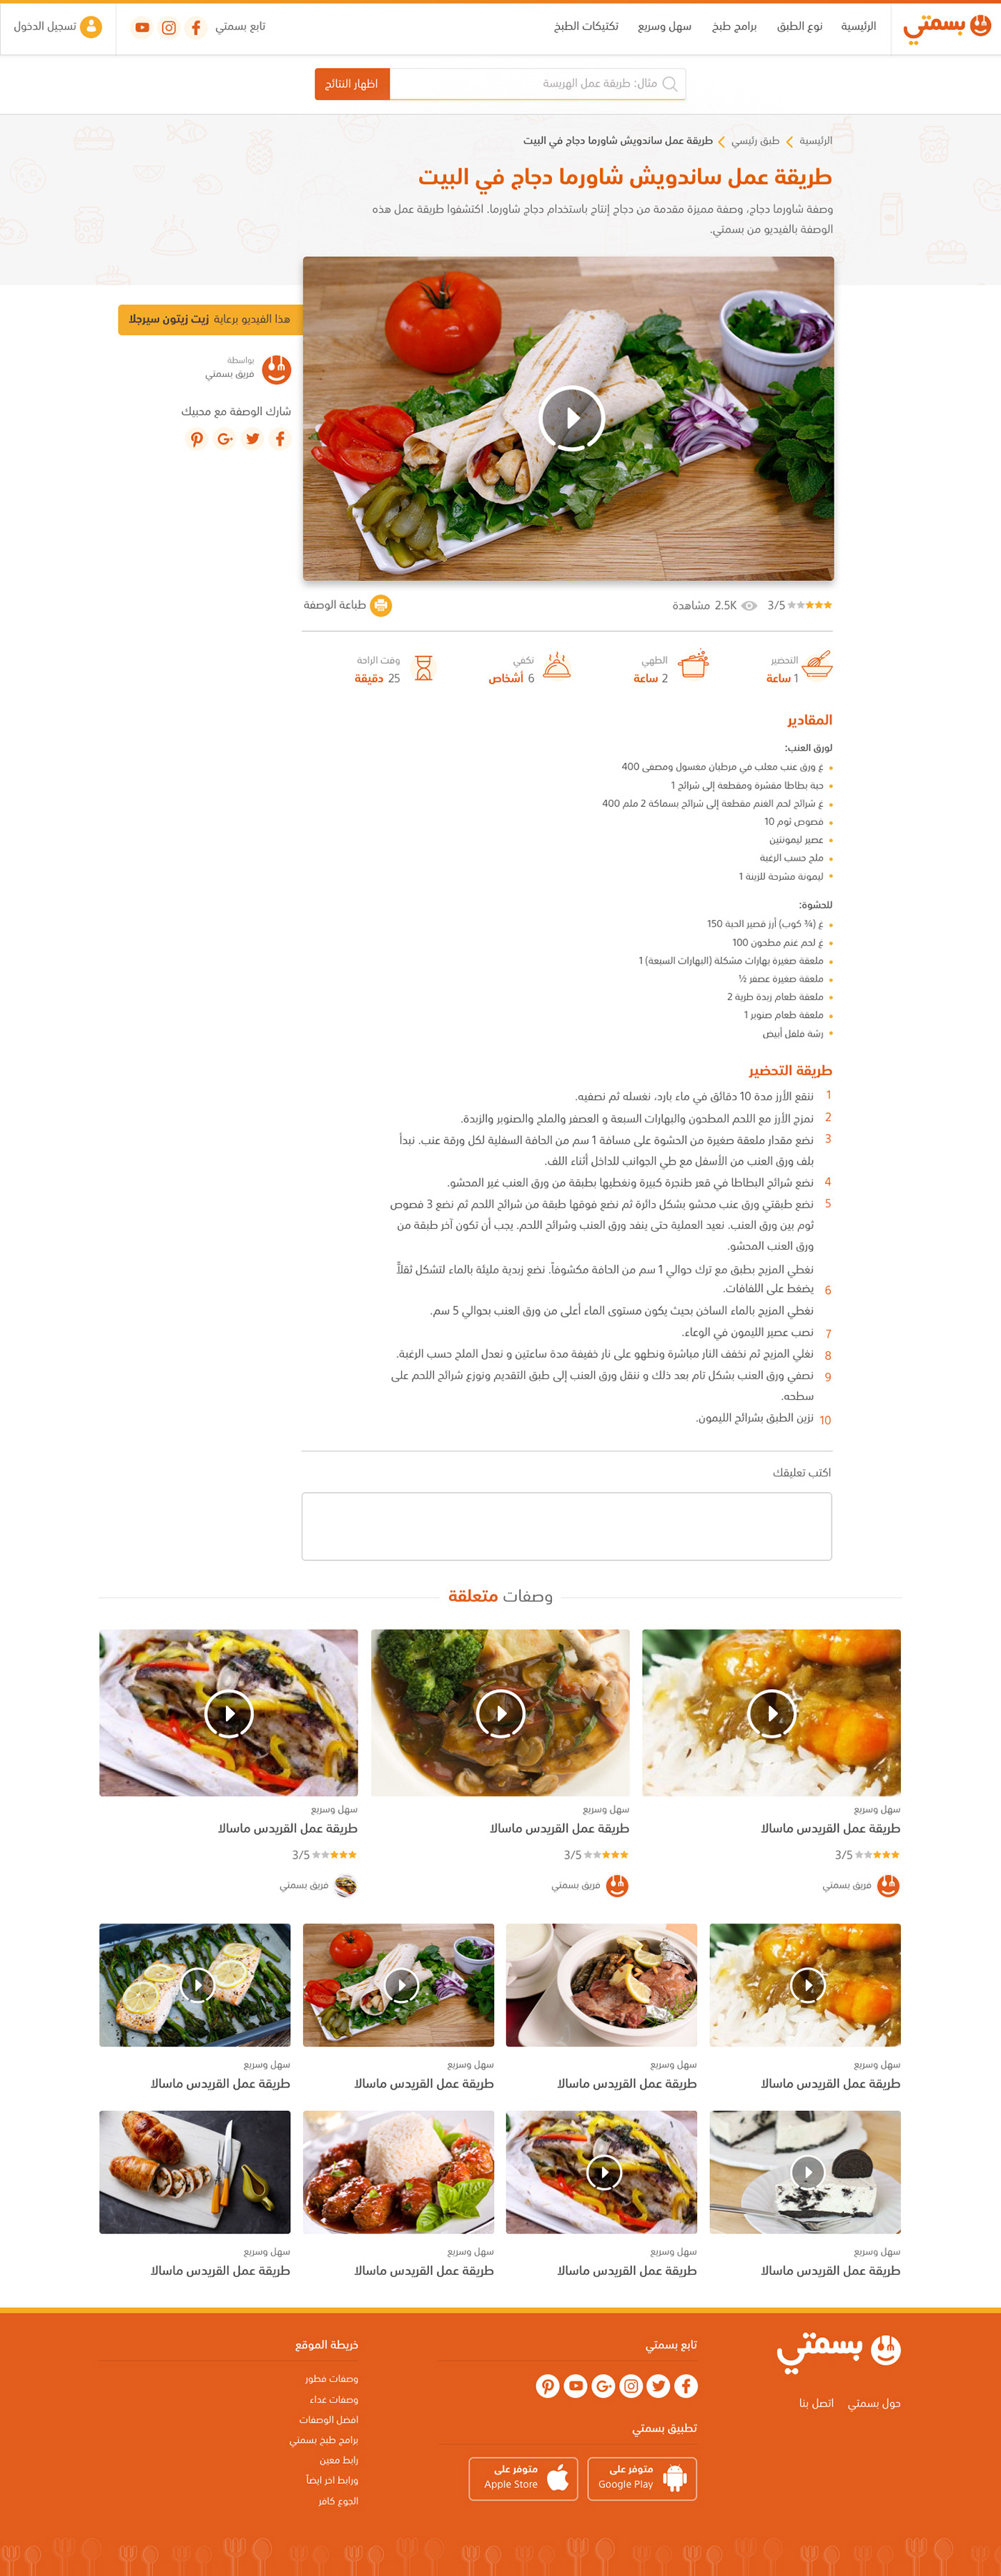 basmaty redesign ishadeed MENA cooking Food  recipes ux UI